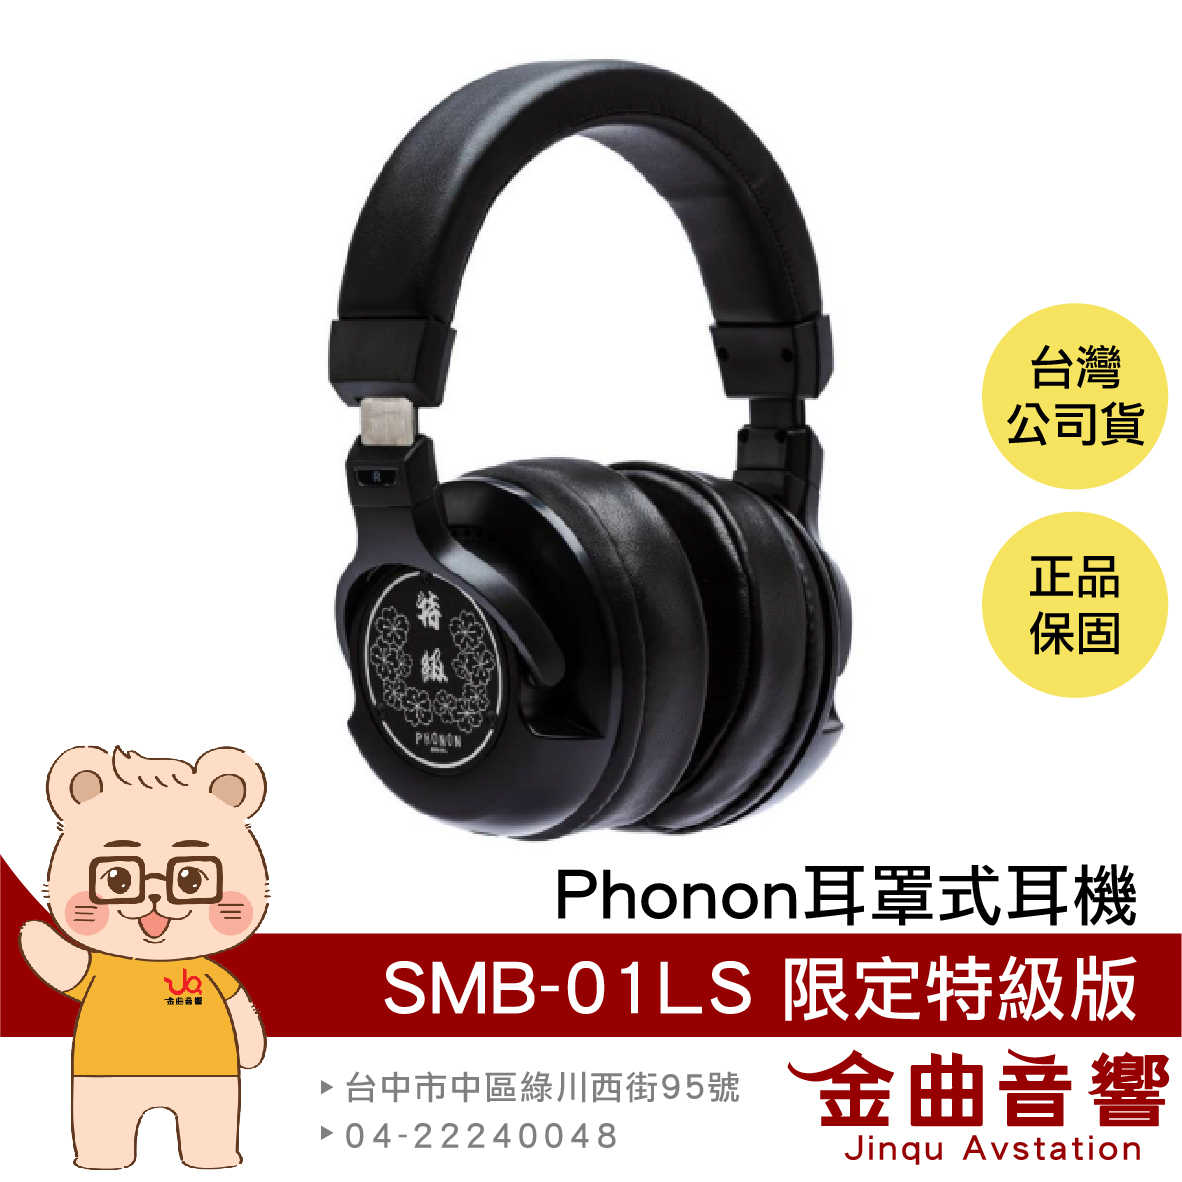 Phonon SMB-01LS 開放式 封閉式 二合一 限定 特級版 錄音 旗艦 監聽 耳罩 耳機 | 金曲音響